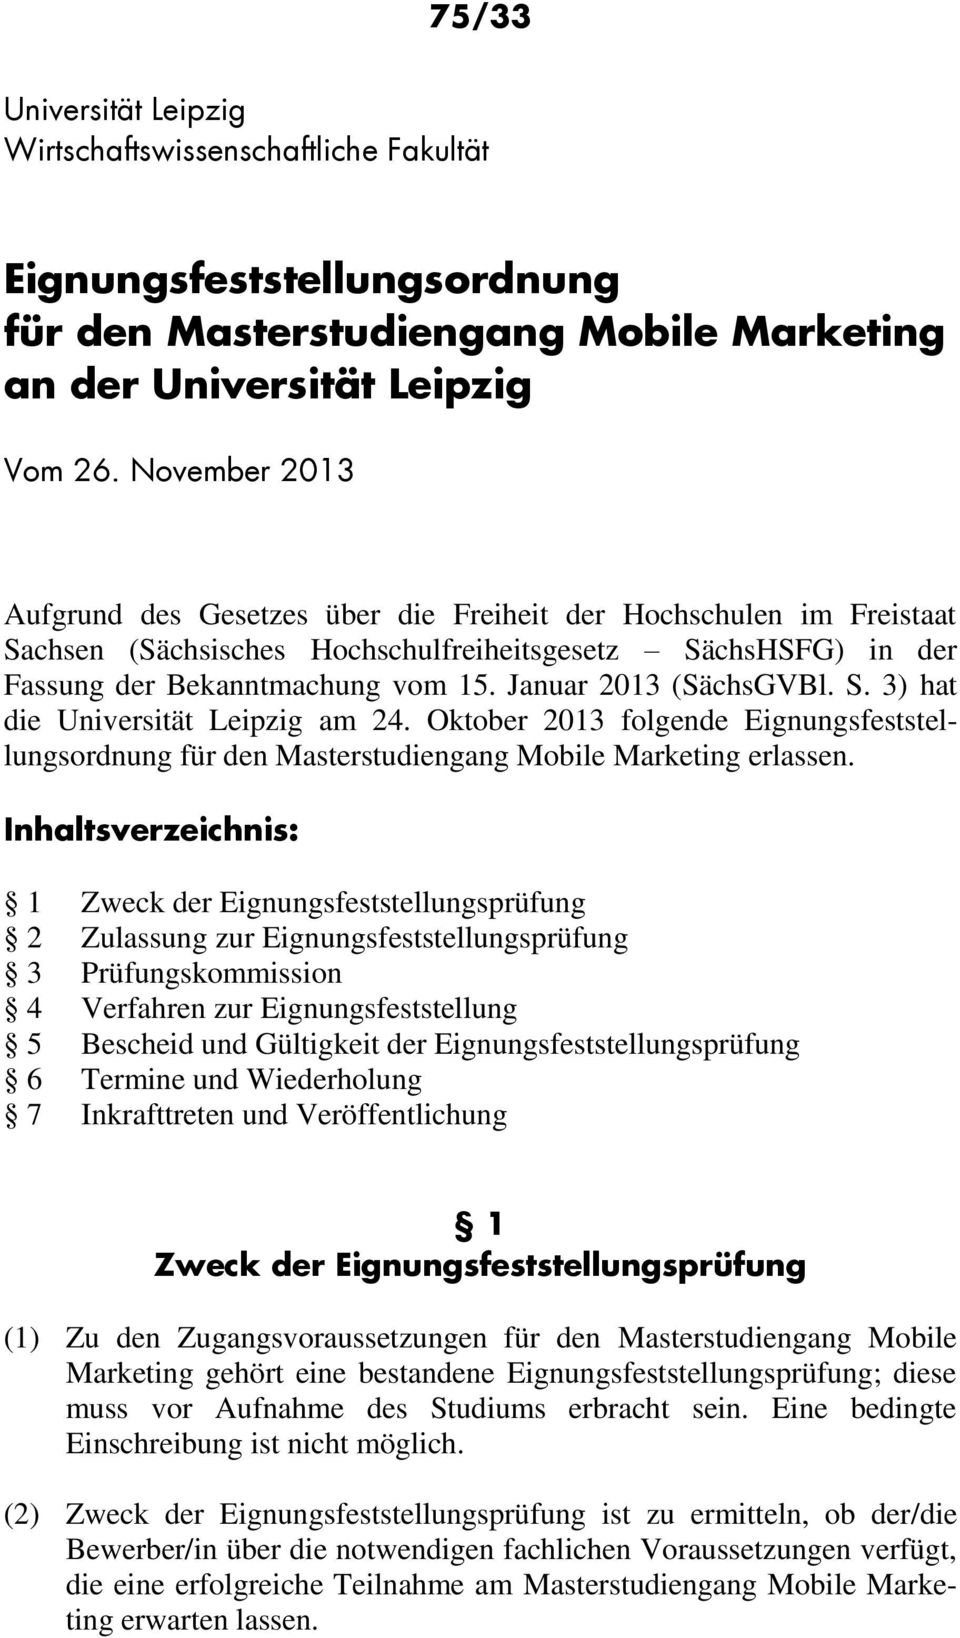 Januar 2013 (SächsGVBl. S. 3) hat die Universität Leipzig am 24. Oktober 2013 folgende Eignungsfeststellungsordnung für den Masterstudiengang Mobile Marketing erlassen.